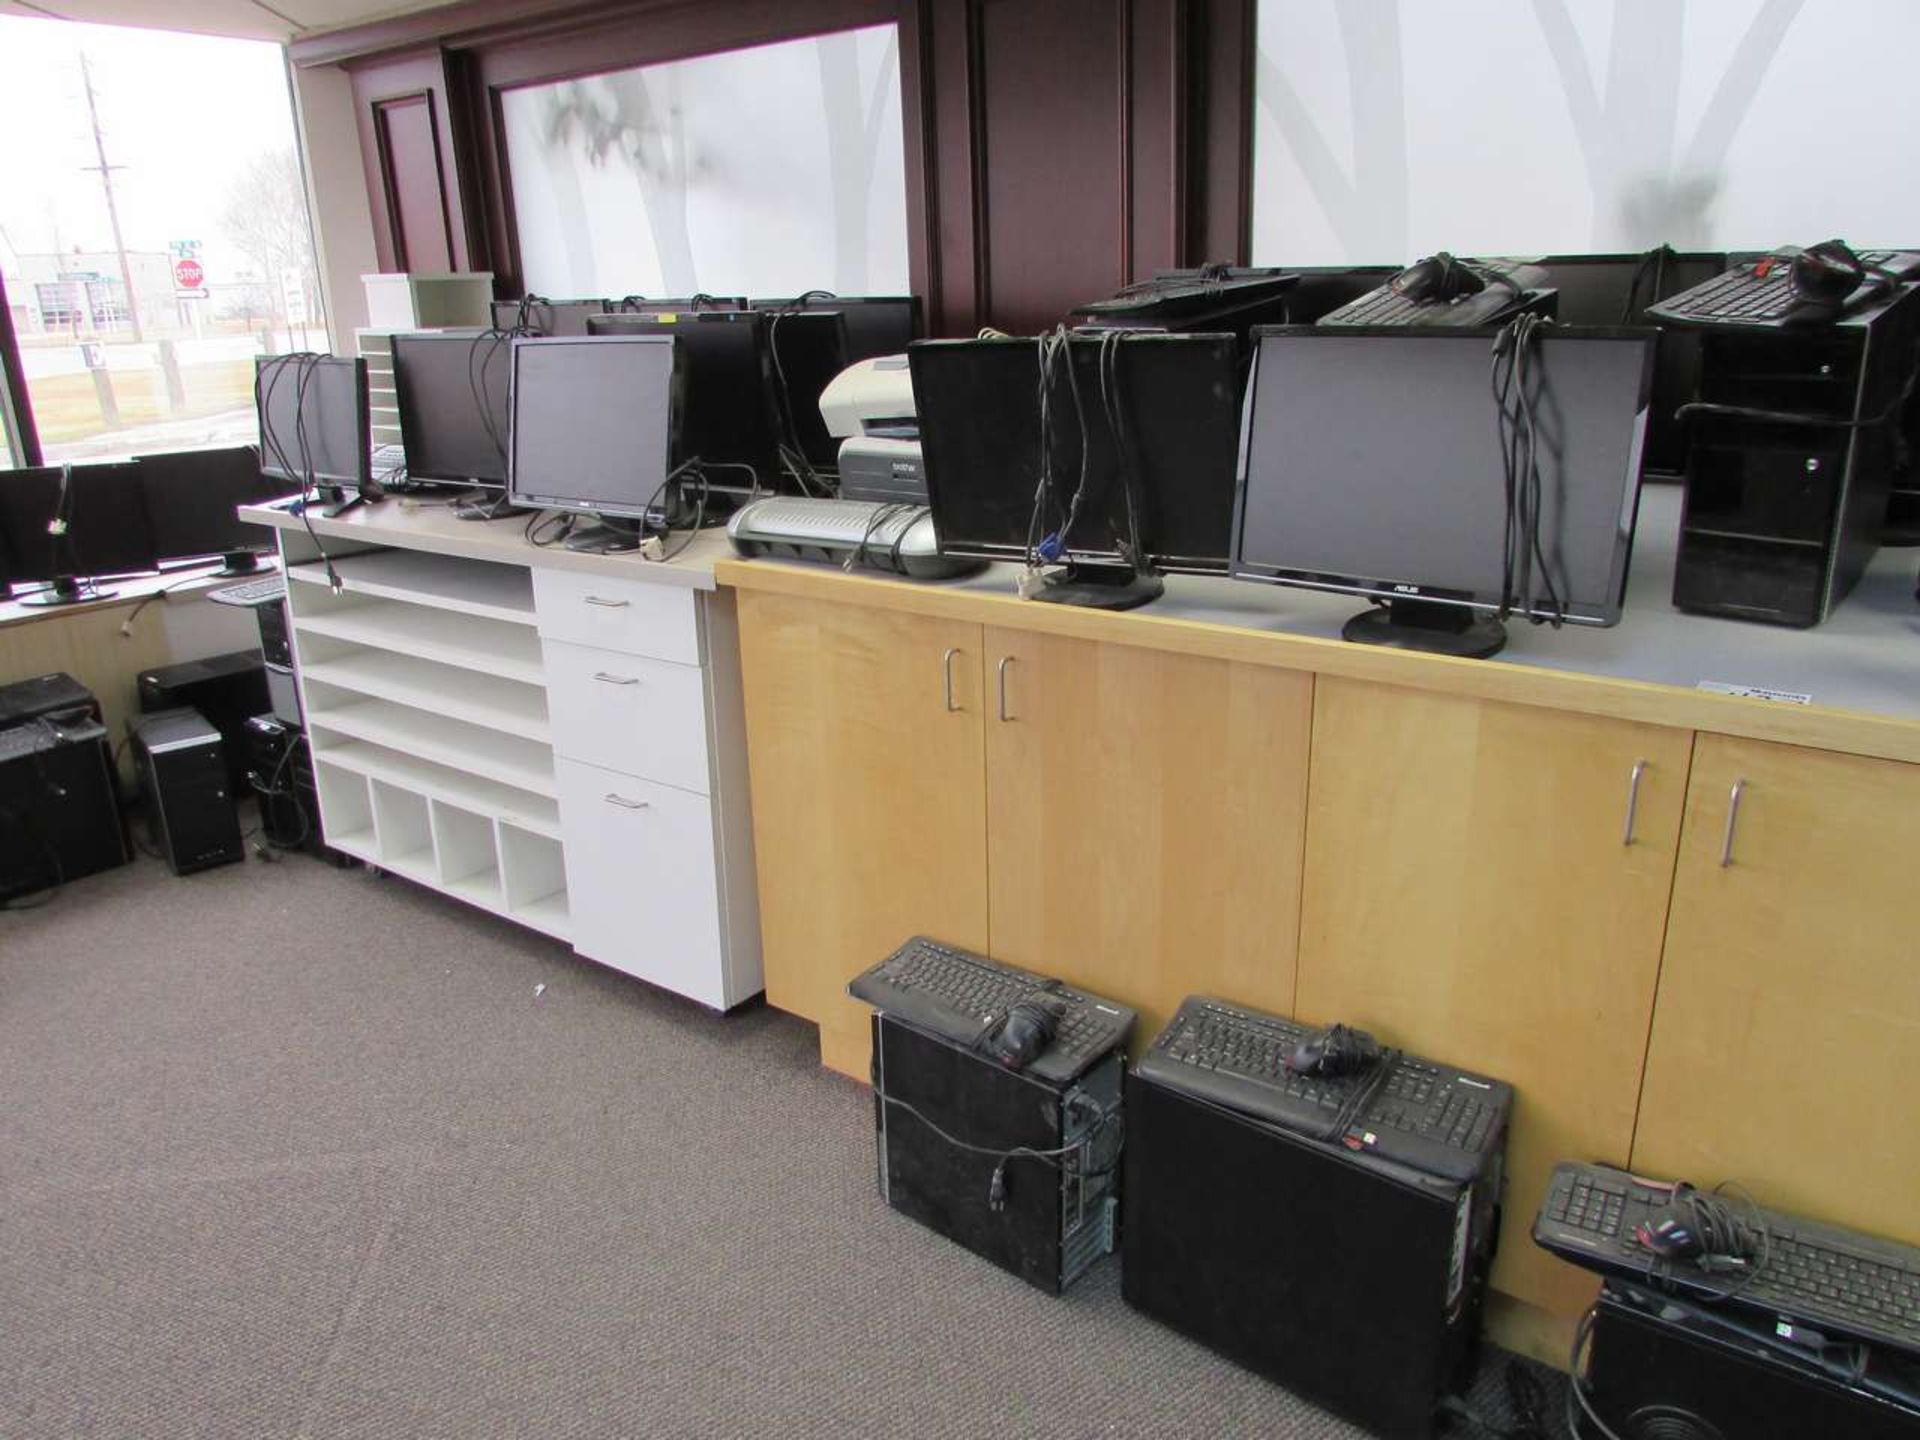 Computers, Monitors, and Printers